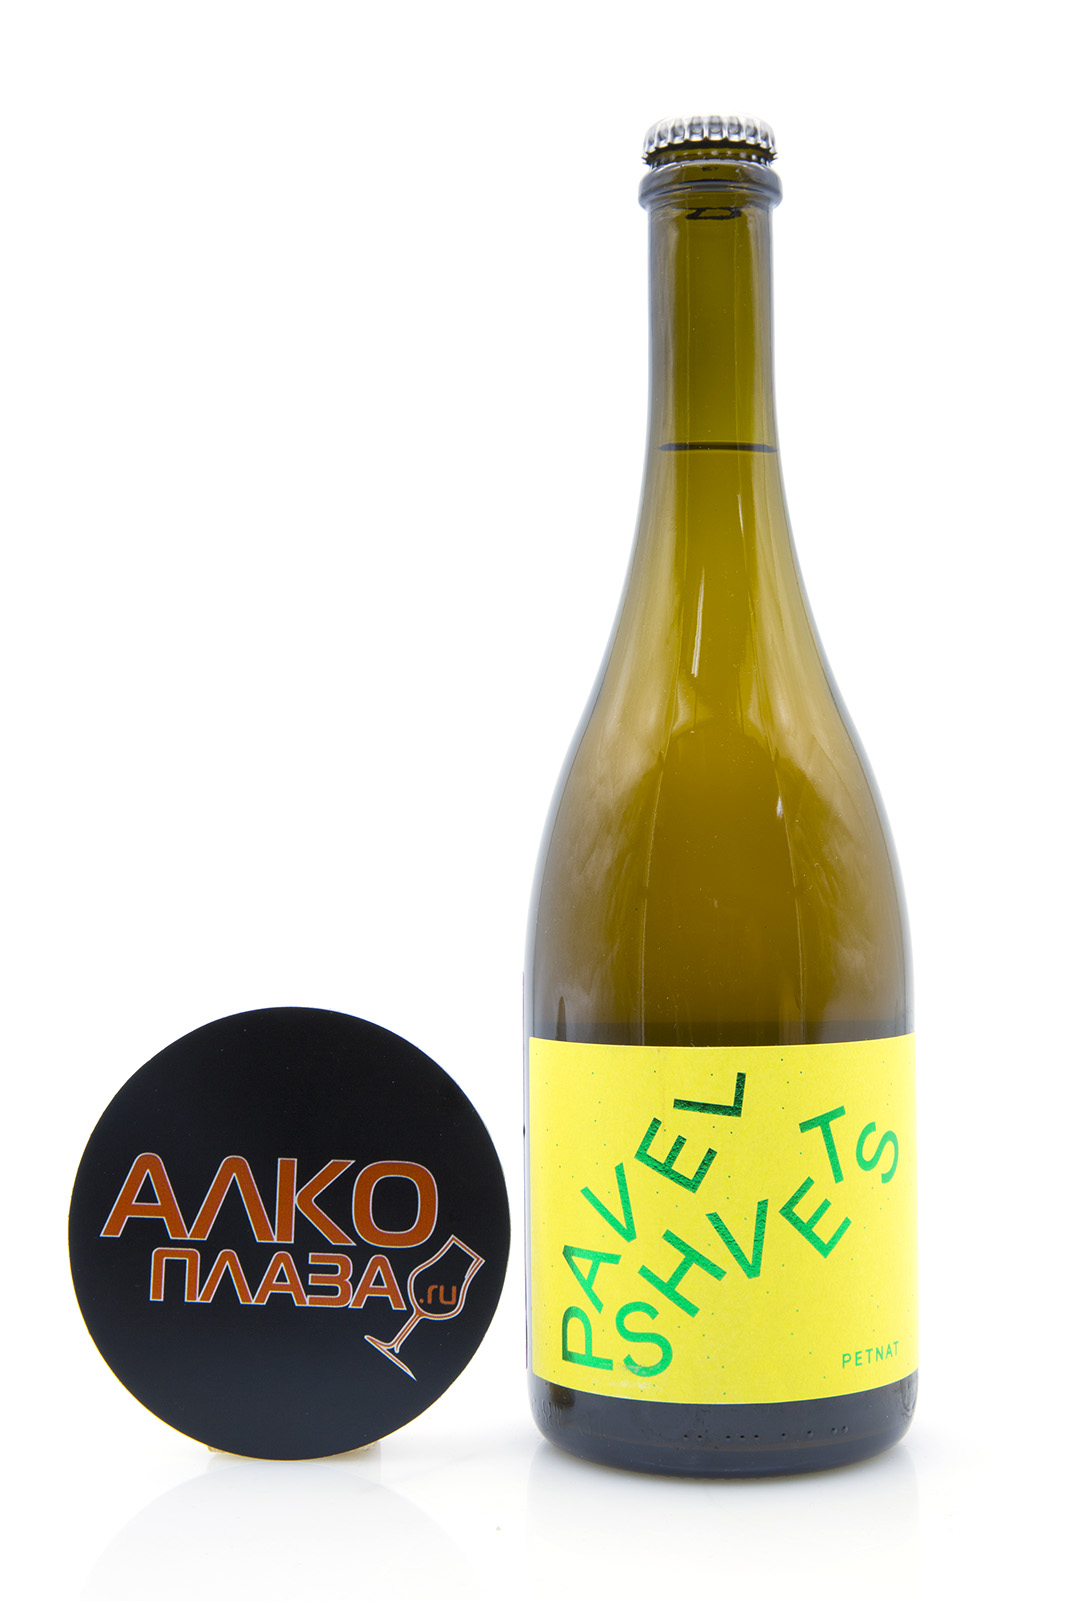 Muskat Pavel Shvets Petnat - игристое жемчужное вино Мускат Павел Швец Петнат белое сухое 0.75 л